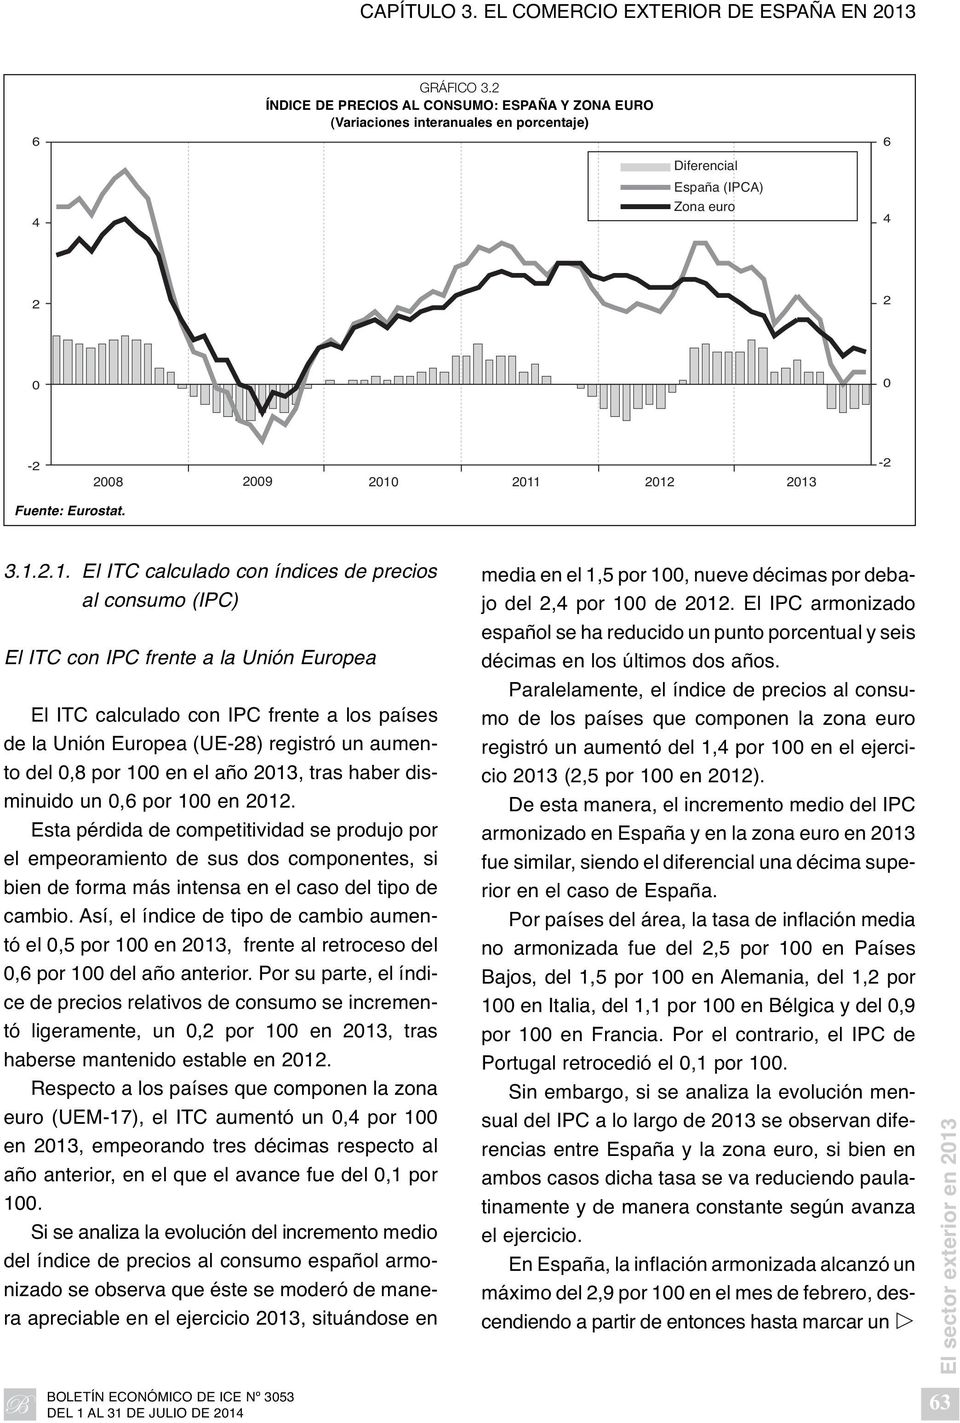 2011 2012 2013-2 Fuente: Eurostat. 3.1.2.1. El ITC calculado con índices de precios al consumo (IPC) El ITC con IPC frente a la Unión Europea El ITC calculado con IPC frente a los países de la Unión